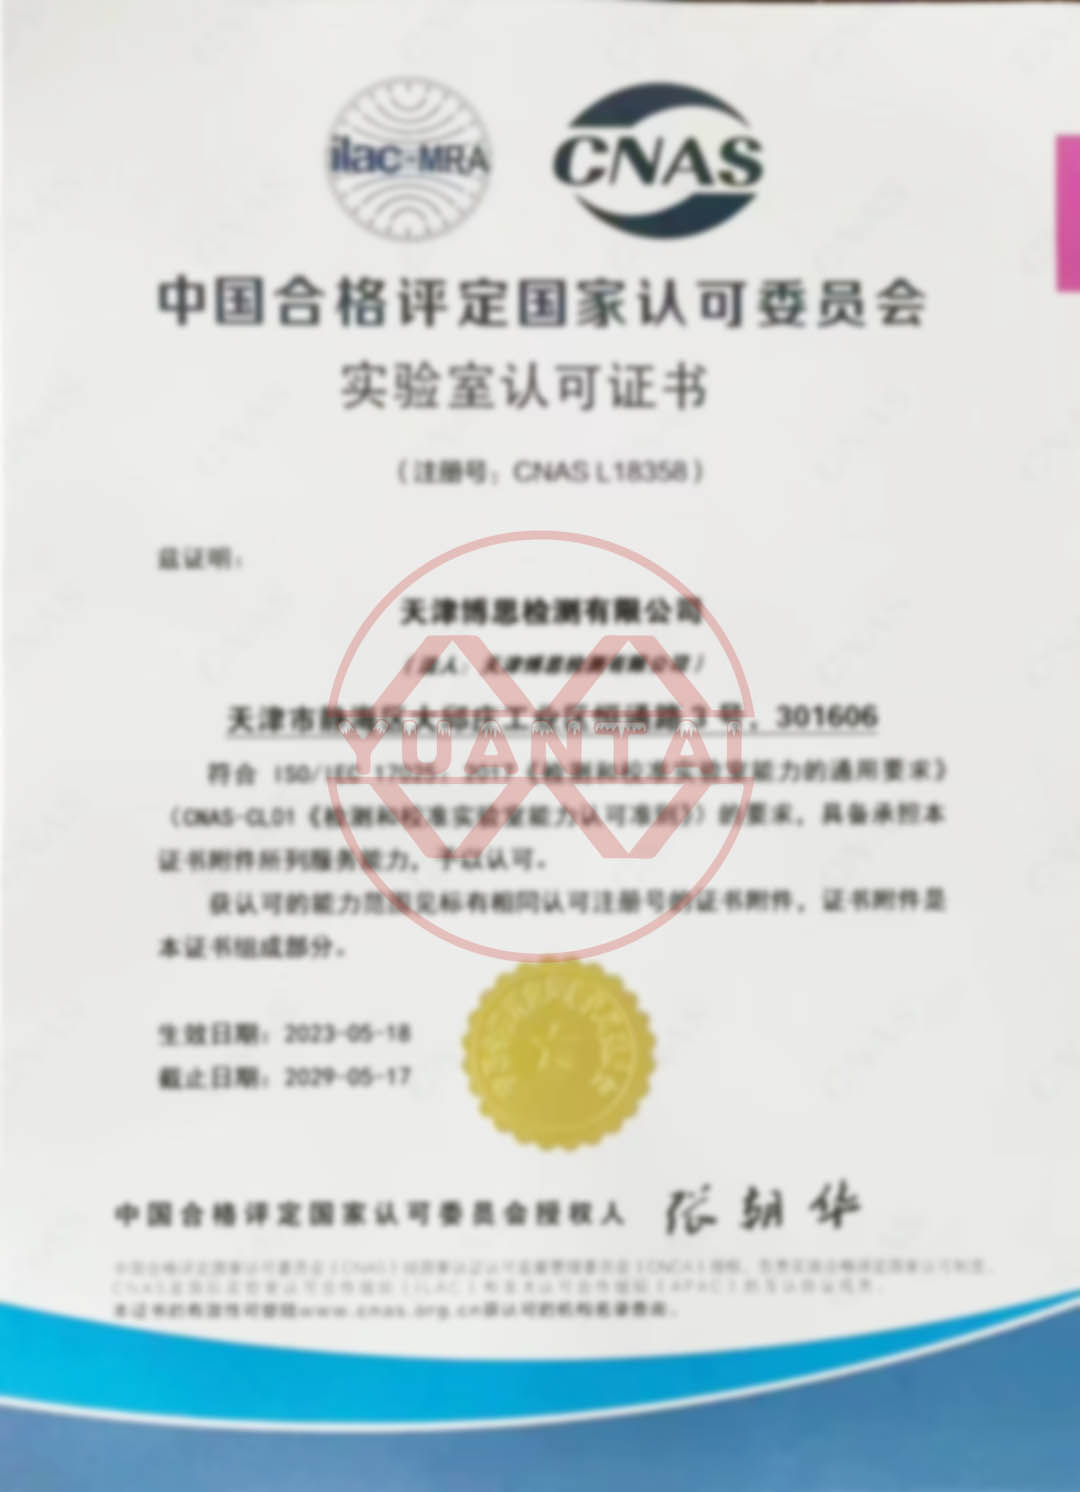 Tithokoze Tianjin Bosi Testing Co., Ltd., wocheperako wa Yuantai Derun Steel Pipe Group, chifukwa chopambana chiphaso cha CNAS.